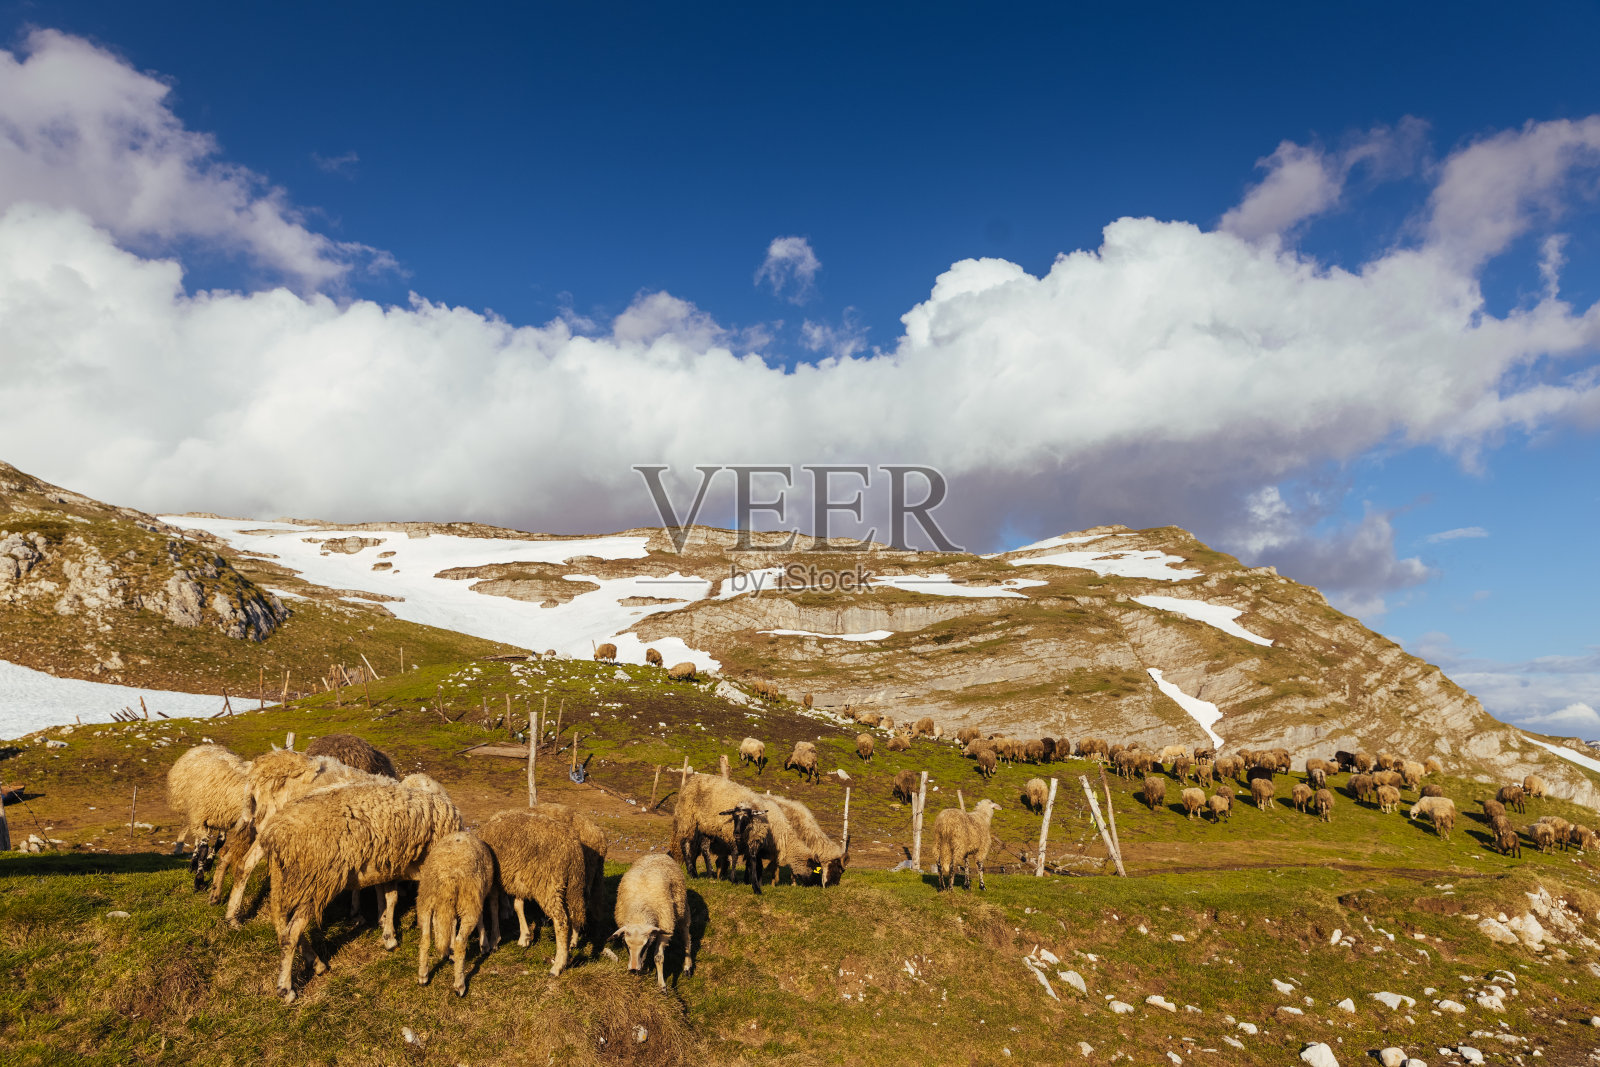 一群羊在吃草。高山草地上的羊照片摄影图片